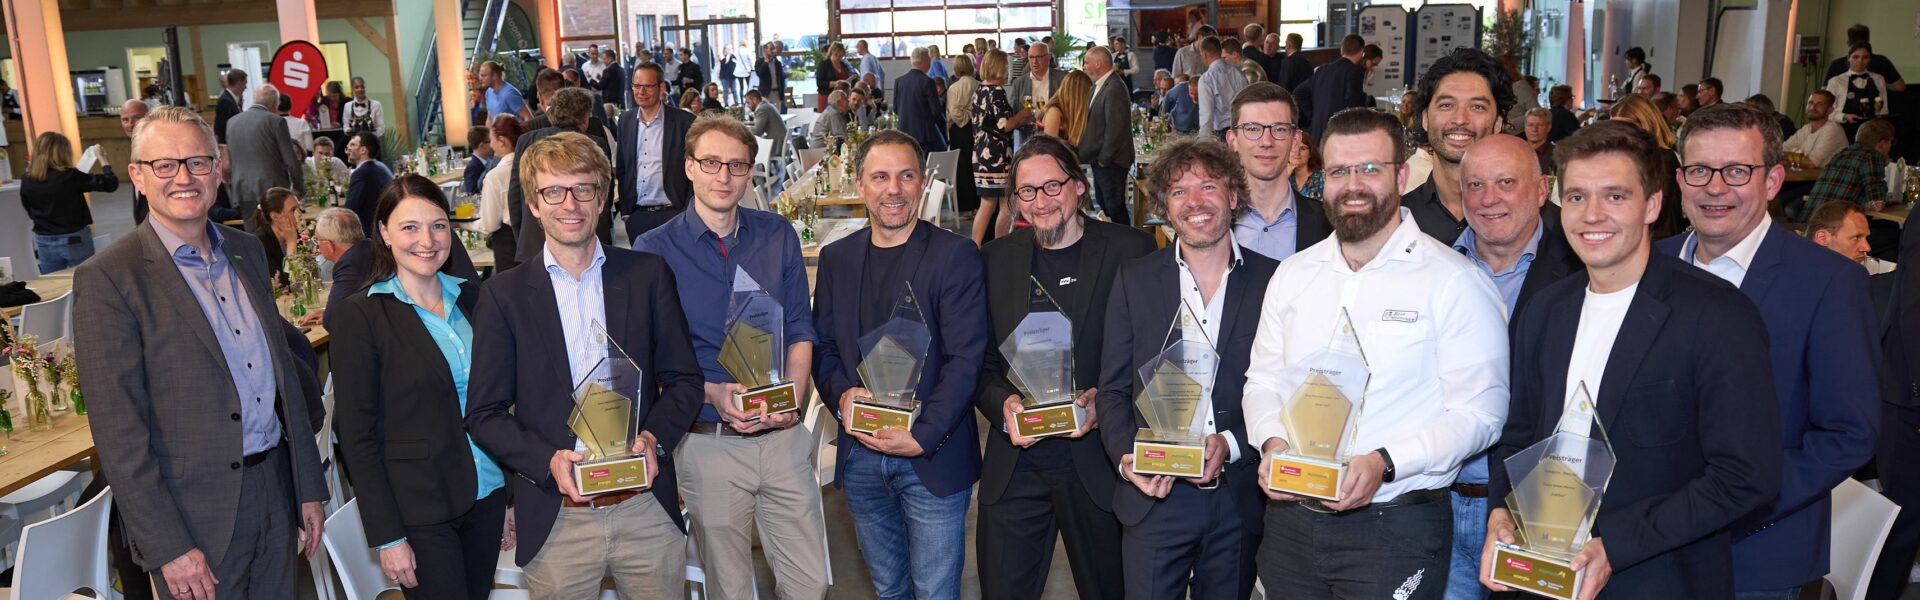 Zauberzeug GmbH räumt beim Innovationspreis Münsterland doppelt ab